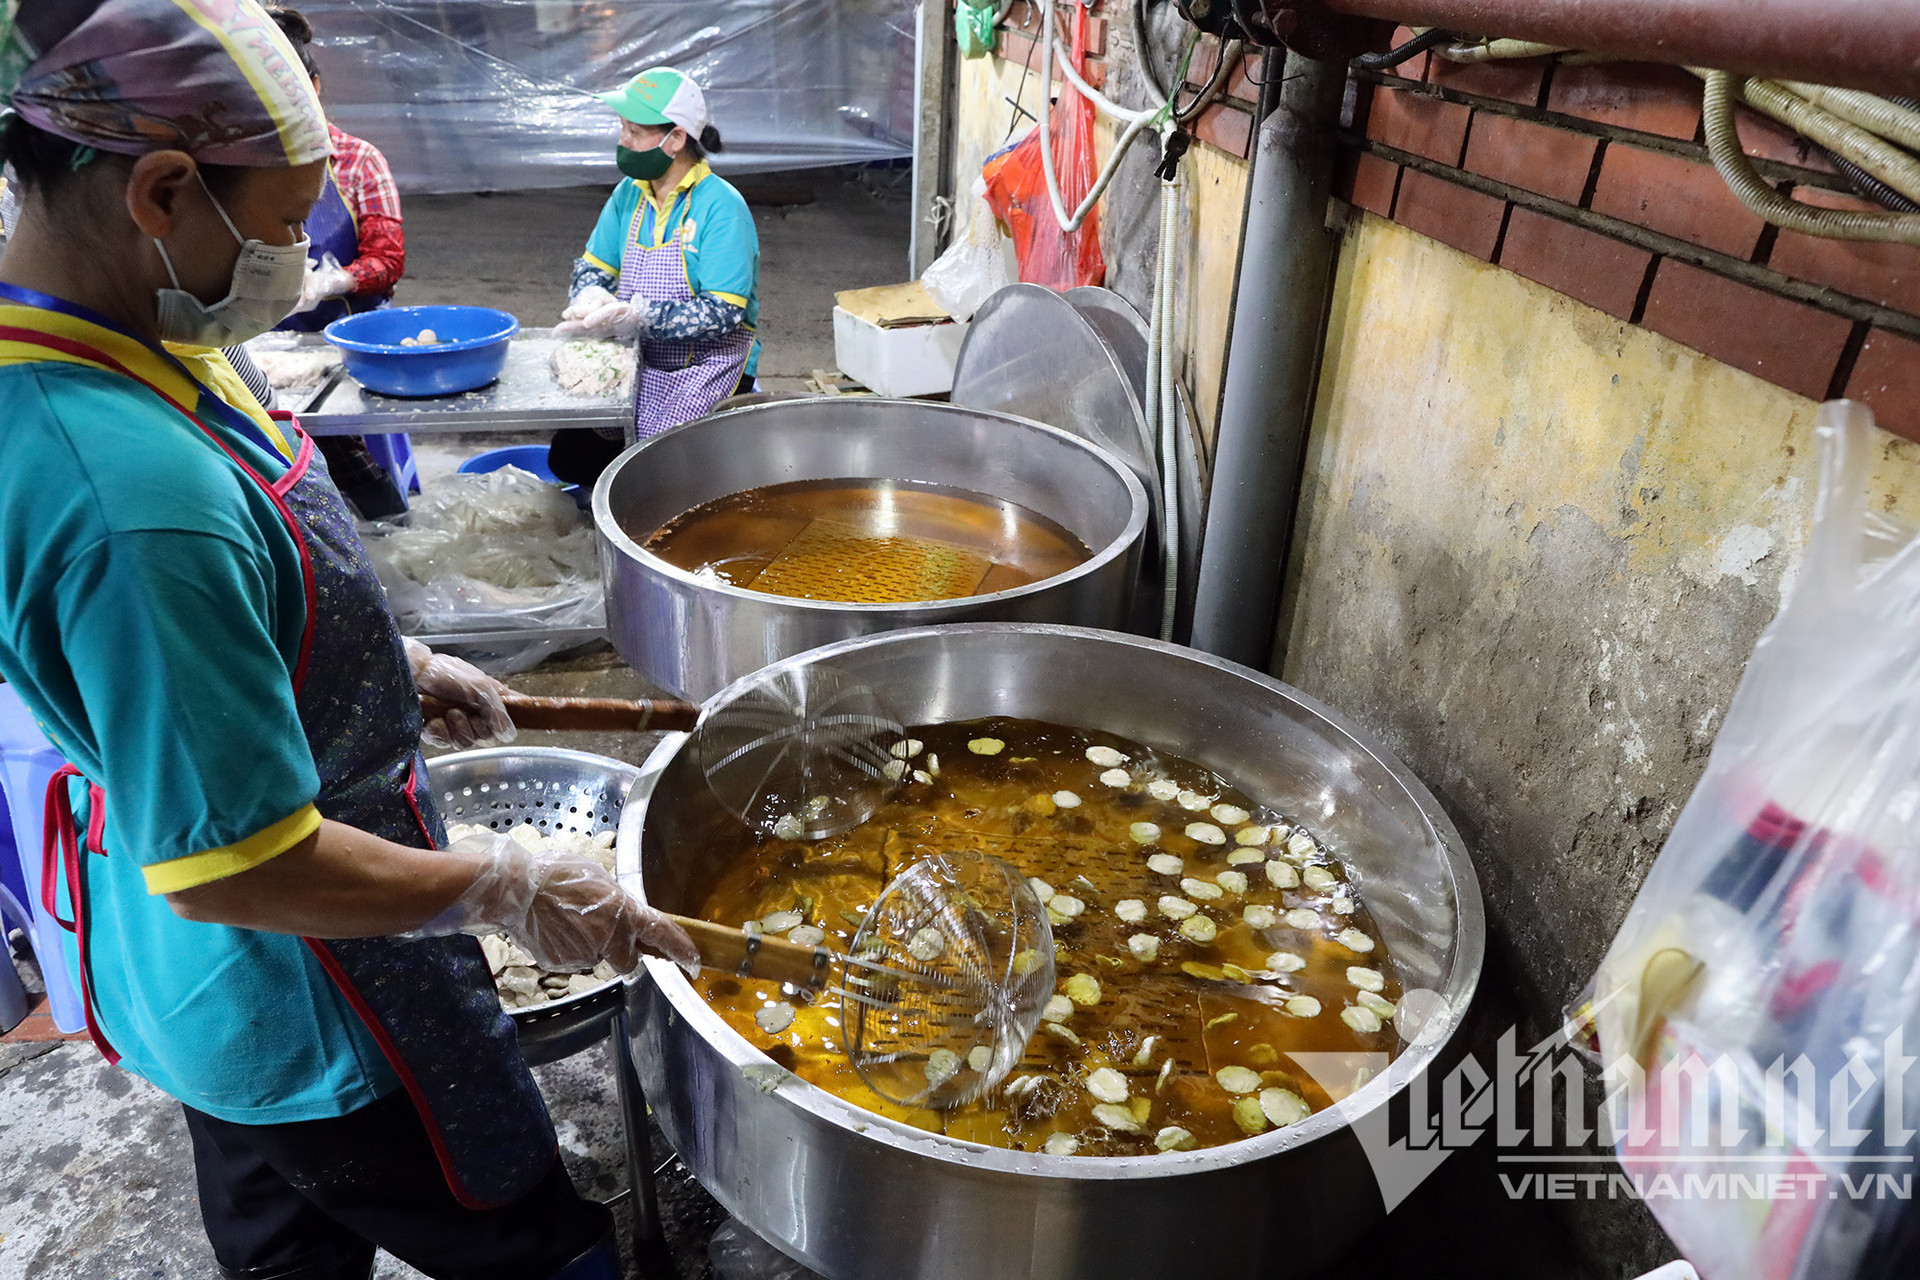 Chợ đầu mối nổi tiếng nhất Hà Nội mở lại sau hai tháng đóng cửa - Ảnh 8.